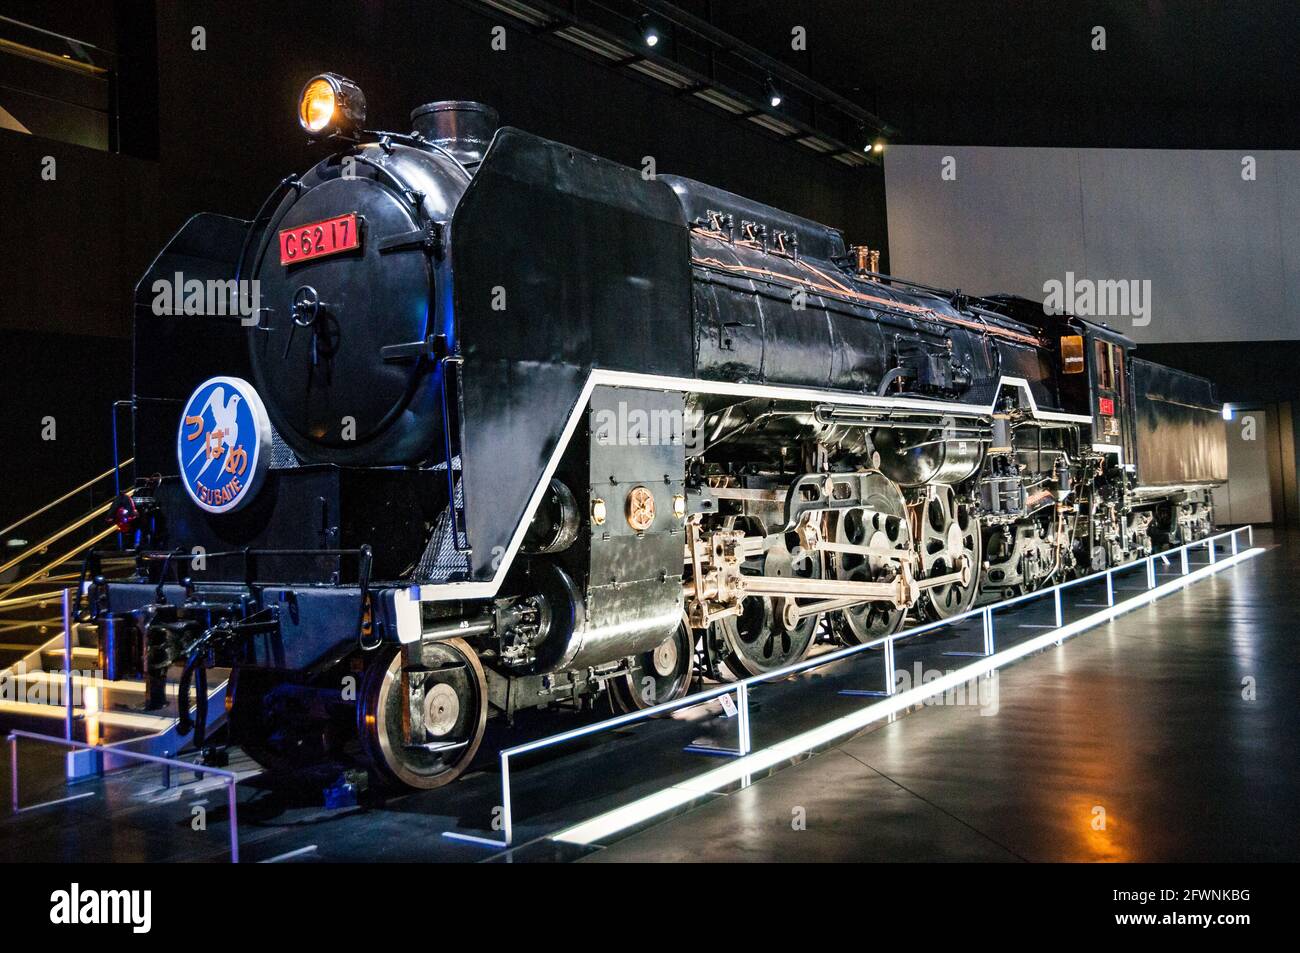 C62 17 a battu le record du monde pour une locomotive à vapeur à voie étroite en 1954 d'atteindre une vitesse de 129km/h (80mph). Sur l'affichage dans le SCMaglev et Ferroviaire Banque D'Images